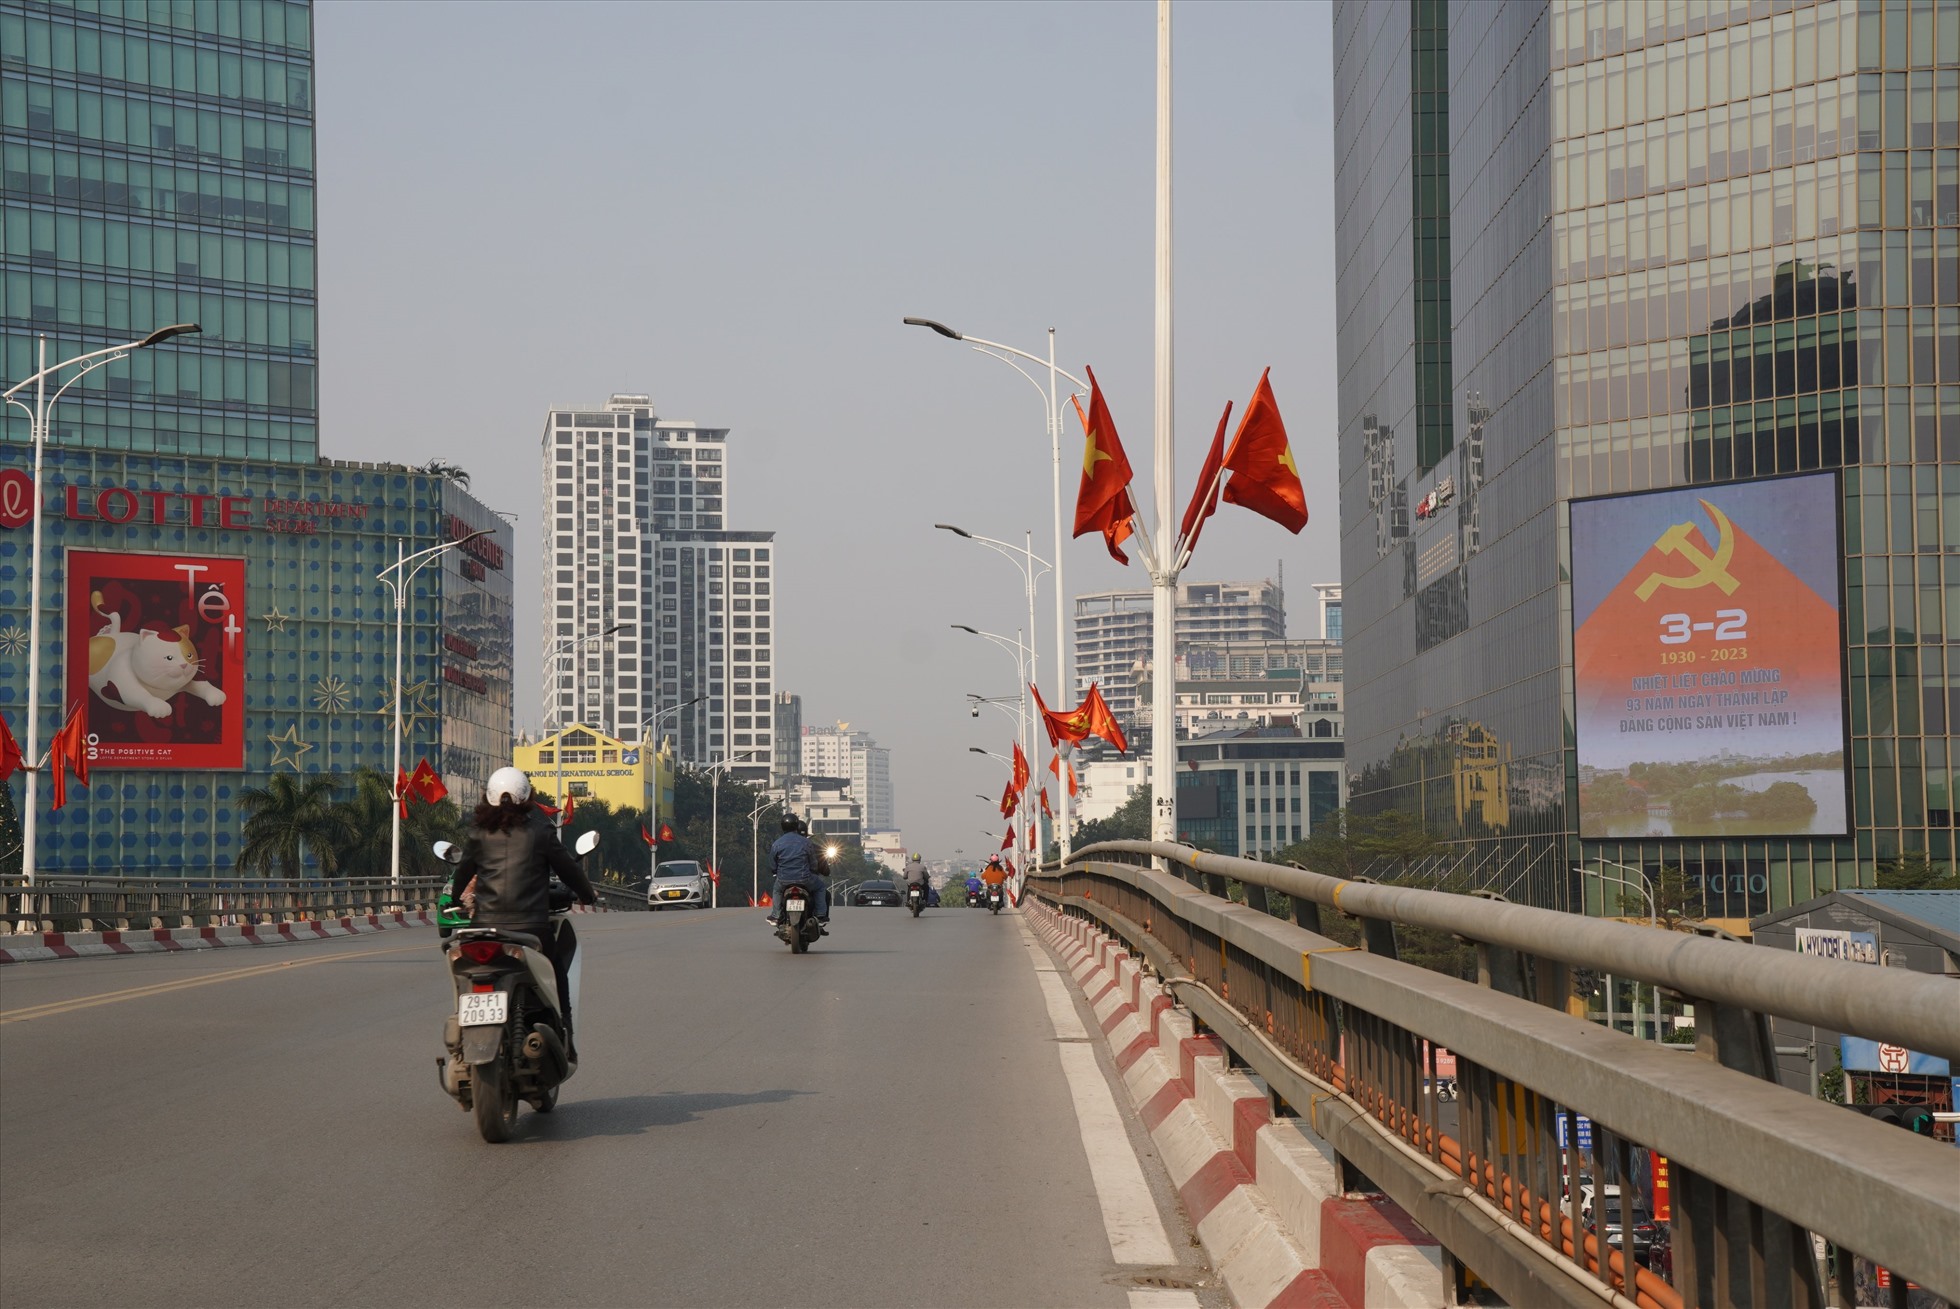 Các tuyến phố Hà Nội hiện đã được trang hoàng rực rỡ cờ hoa để hướng đến kỷ niệm 93 năm ngày thành lập Đảng (3.2.1930 - 3.2.2023).